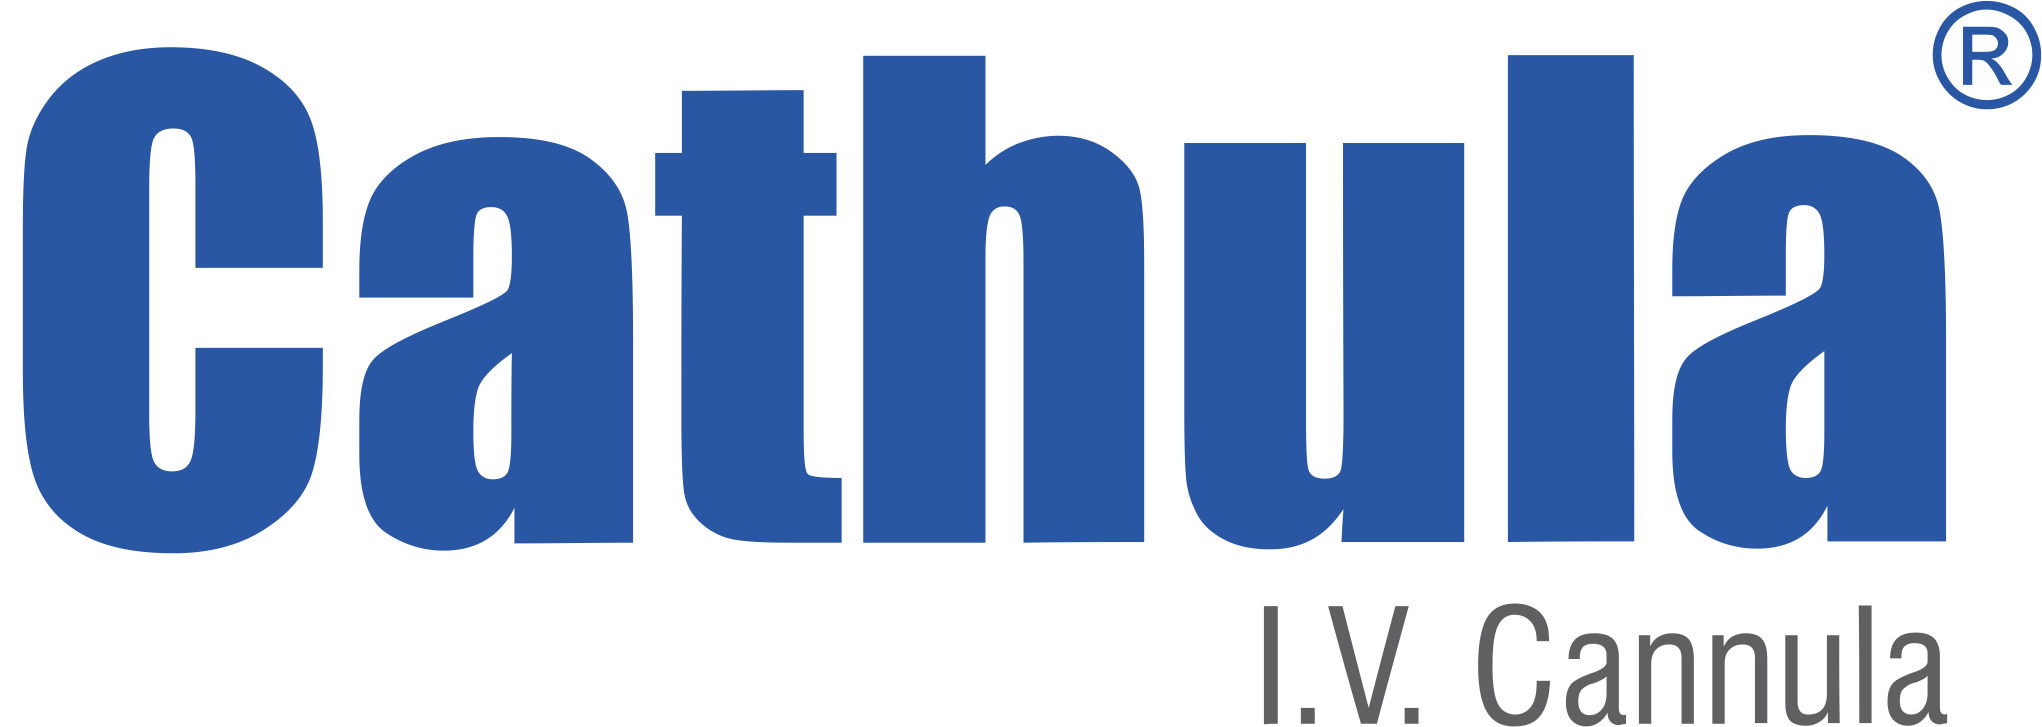 cathula logo